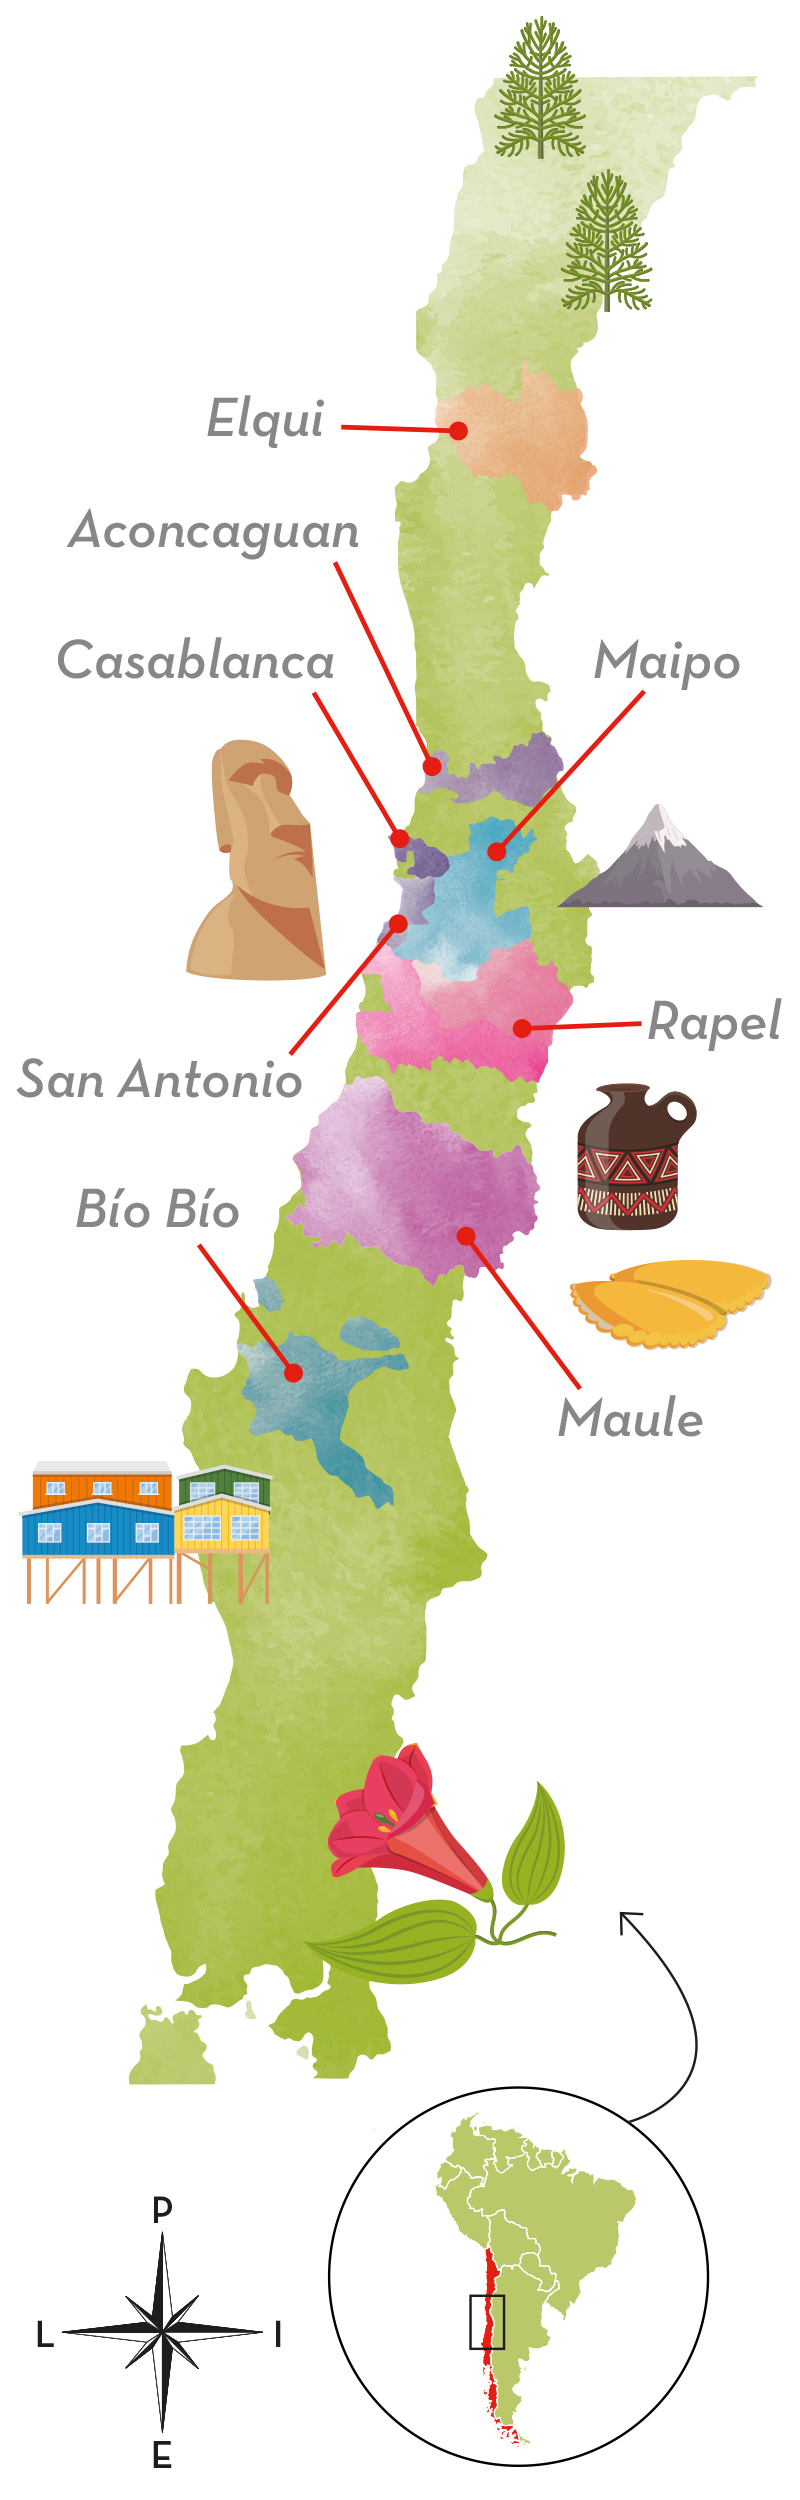 Chilen viinialueet esittelyssä